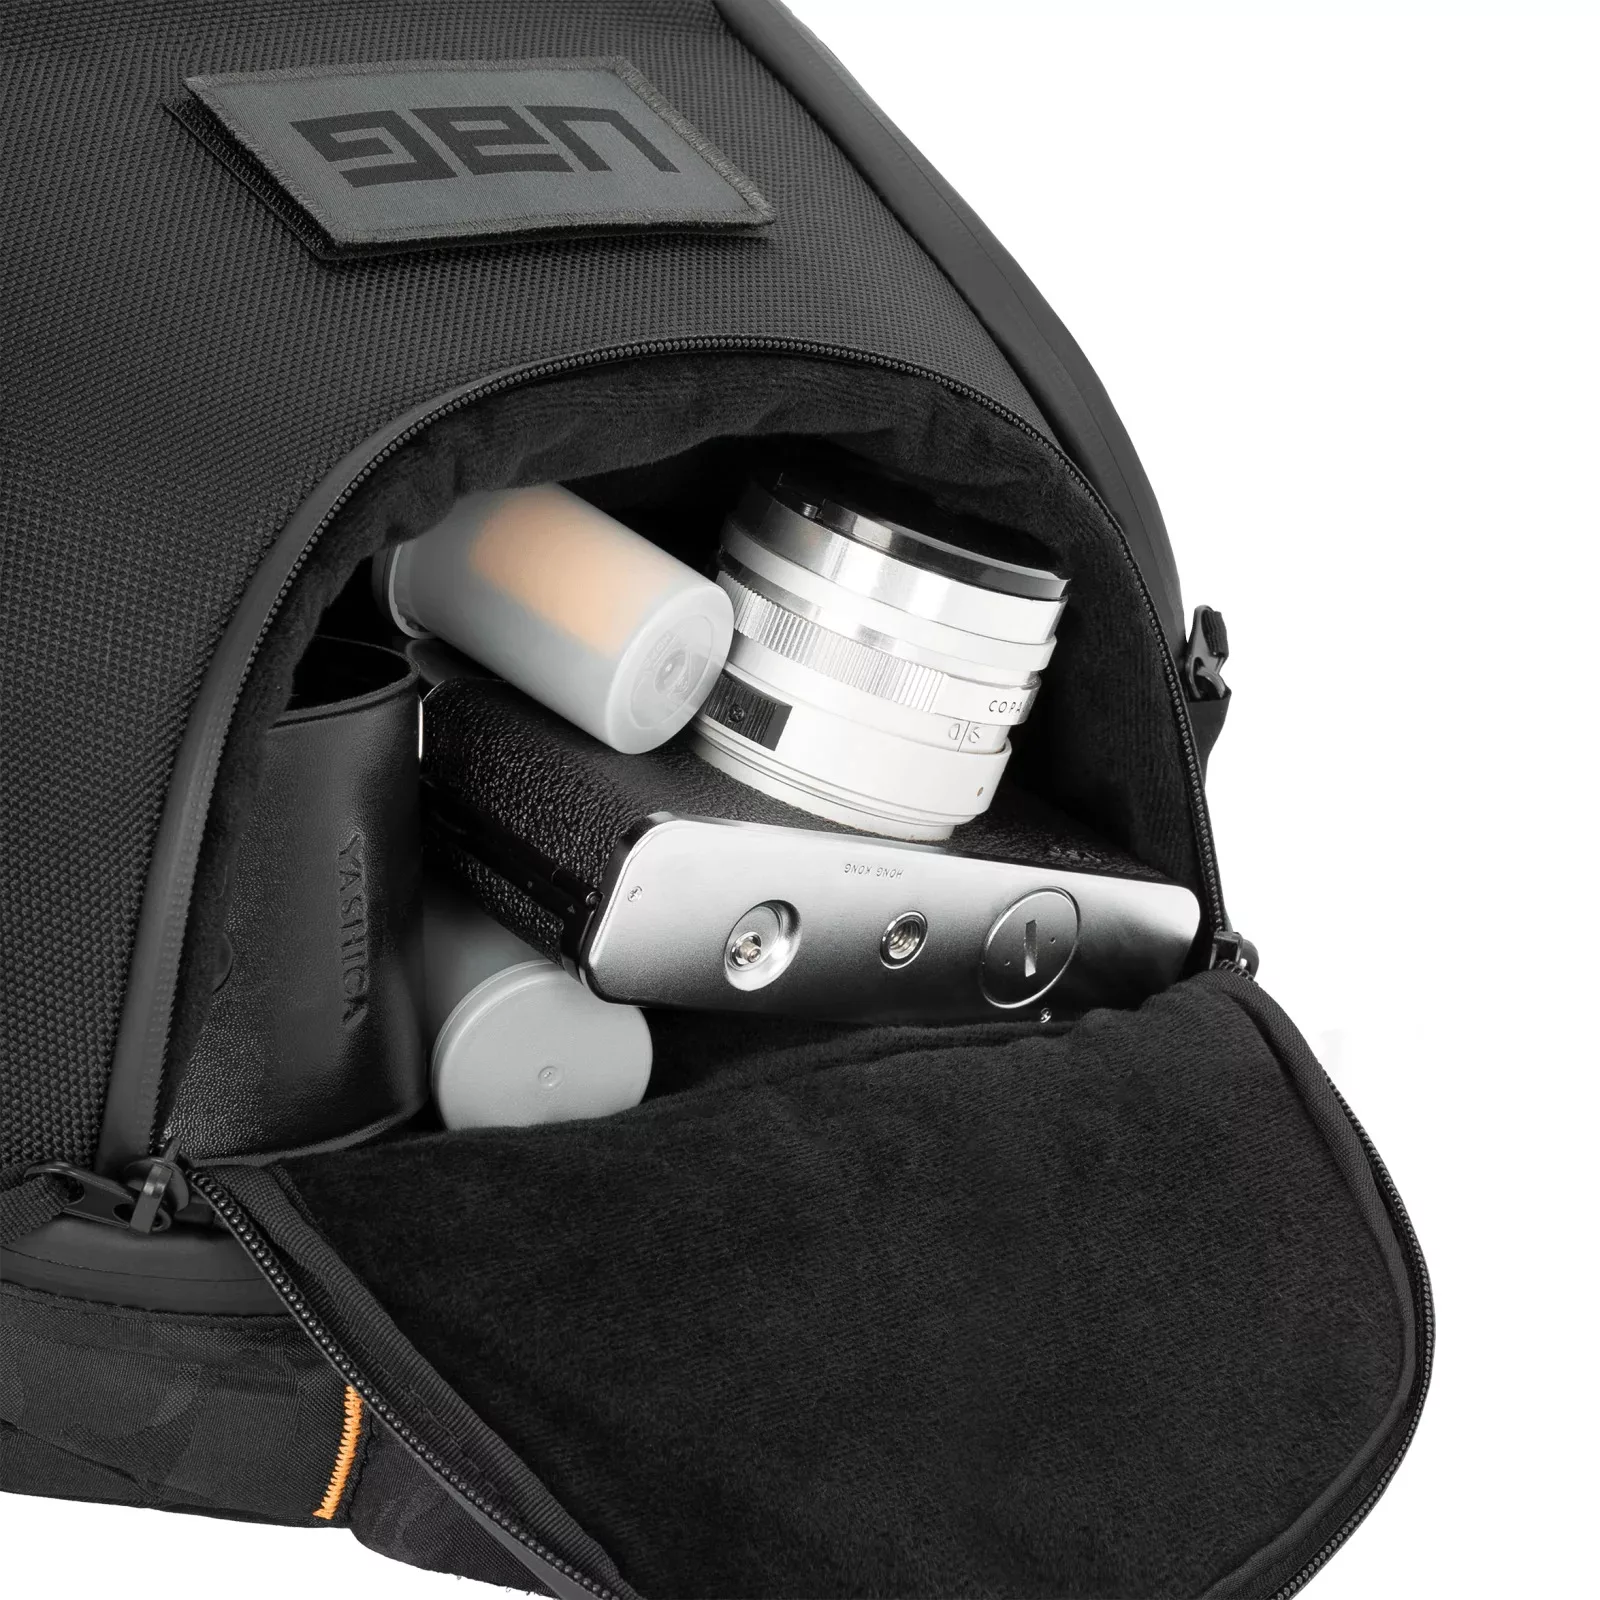 กระเป๋าเป้สะพายหลัง UAG รุ่น Backpack ความจุ 24 ลิตร Compatible - Notebook 16" - Black/Midnight Camo